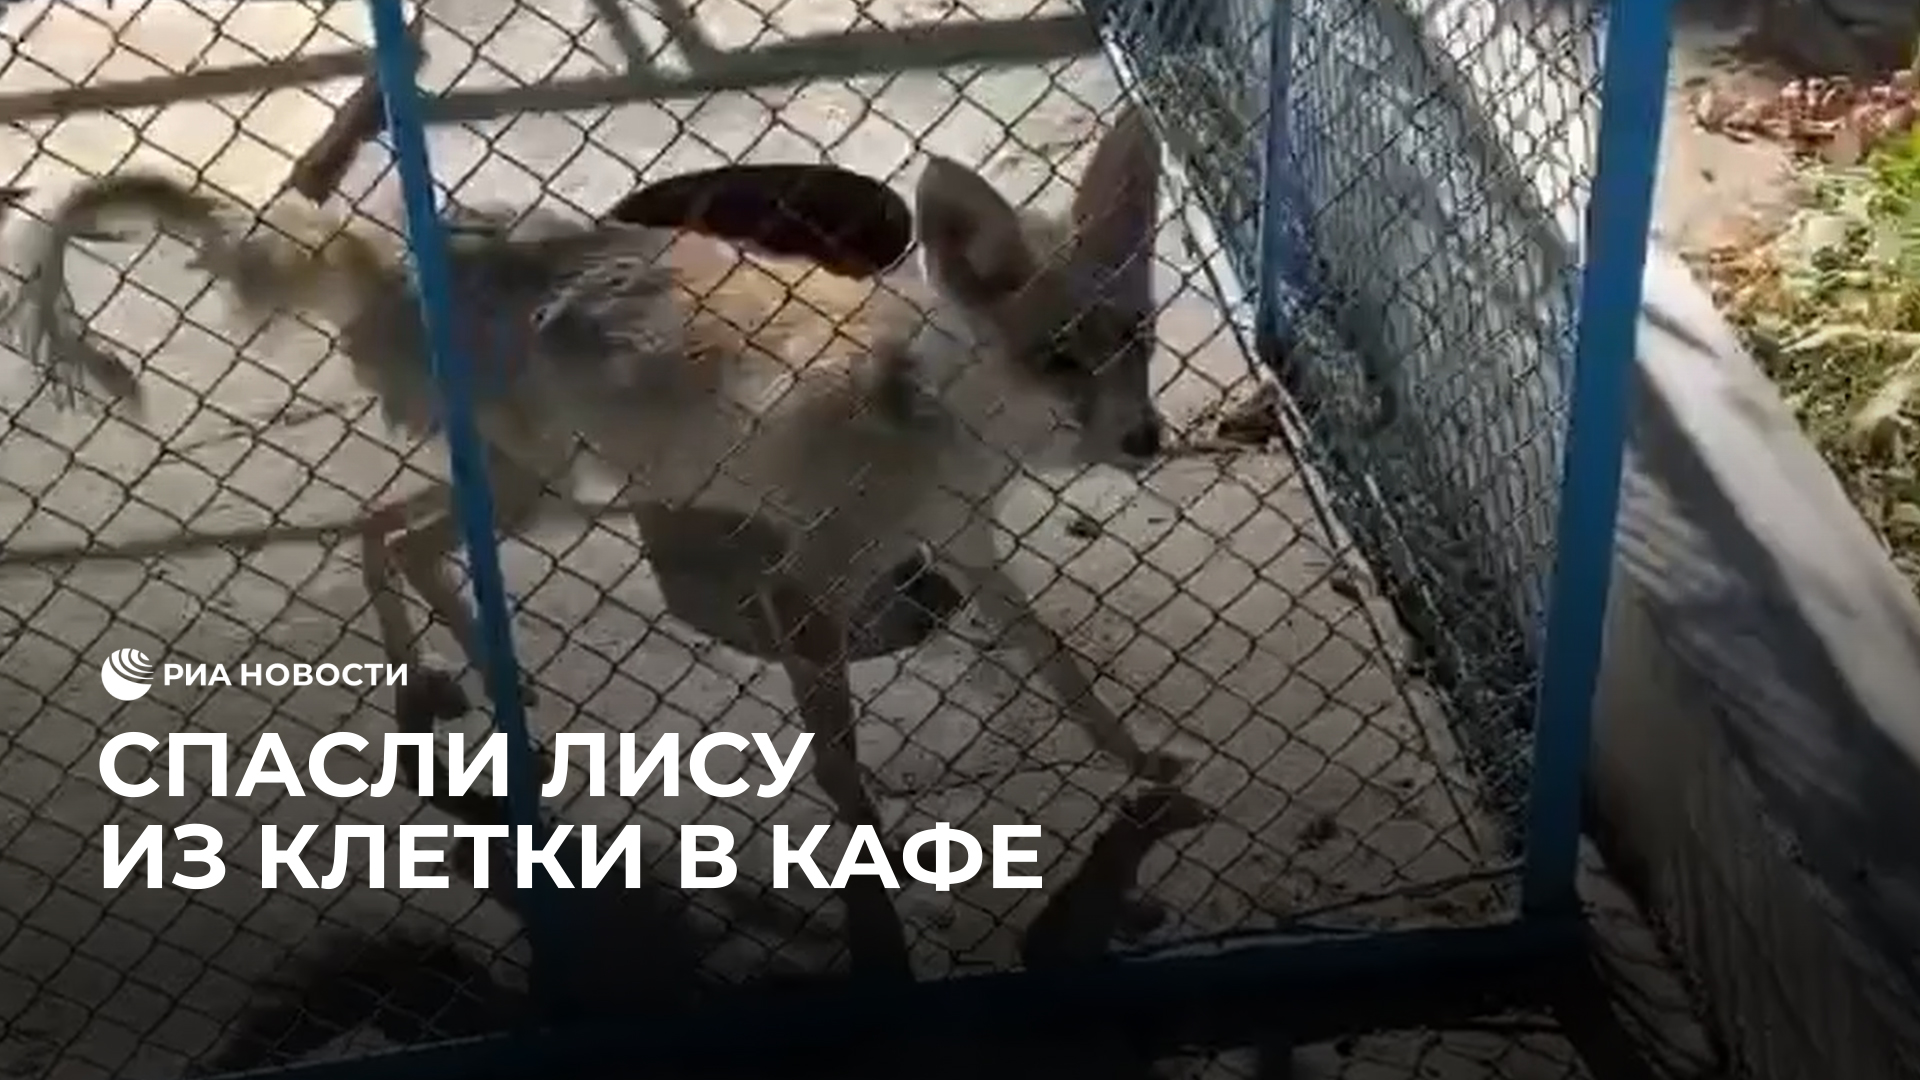 В Узбекистане спасли лису из клетки в кафе